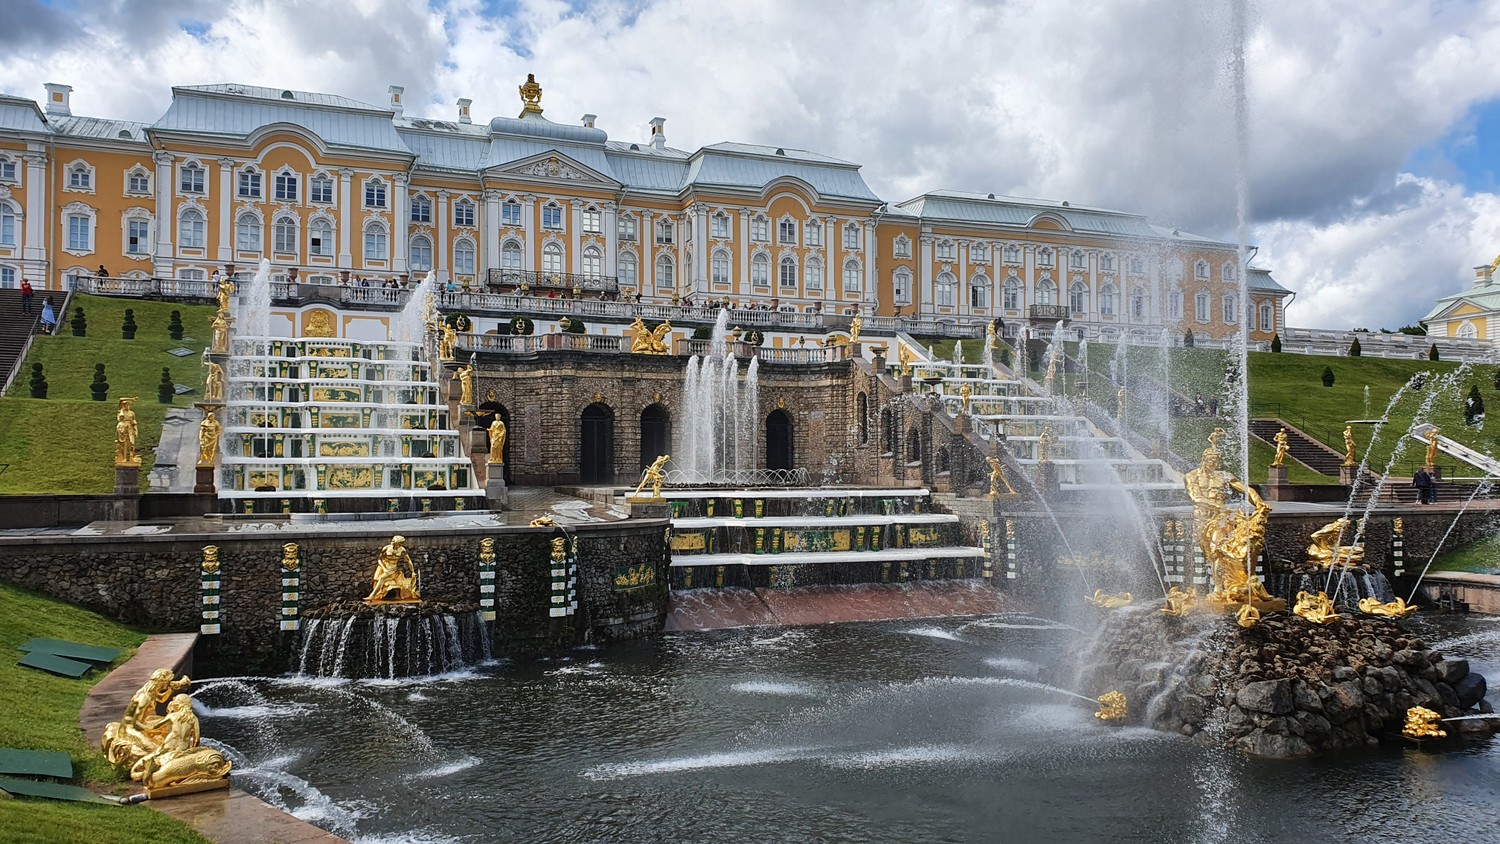 Достопримечательности пригорода санкт петербурга фото с названиями